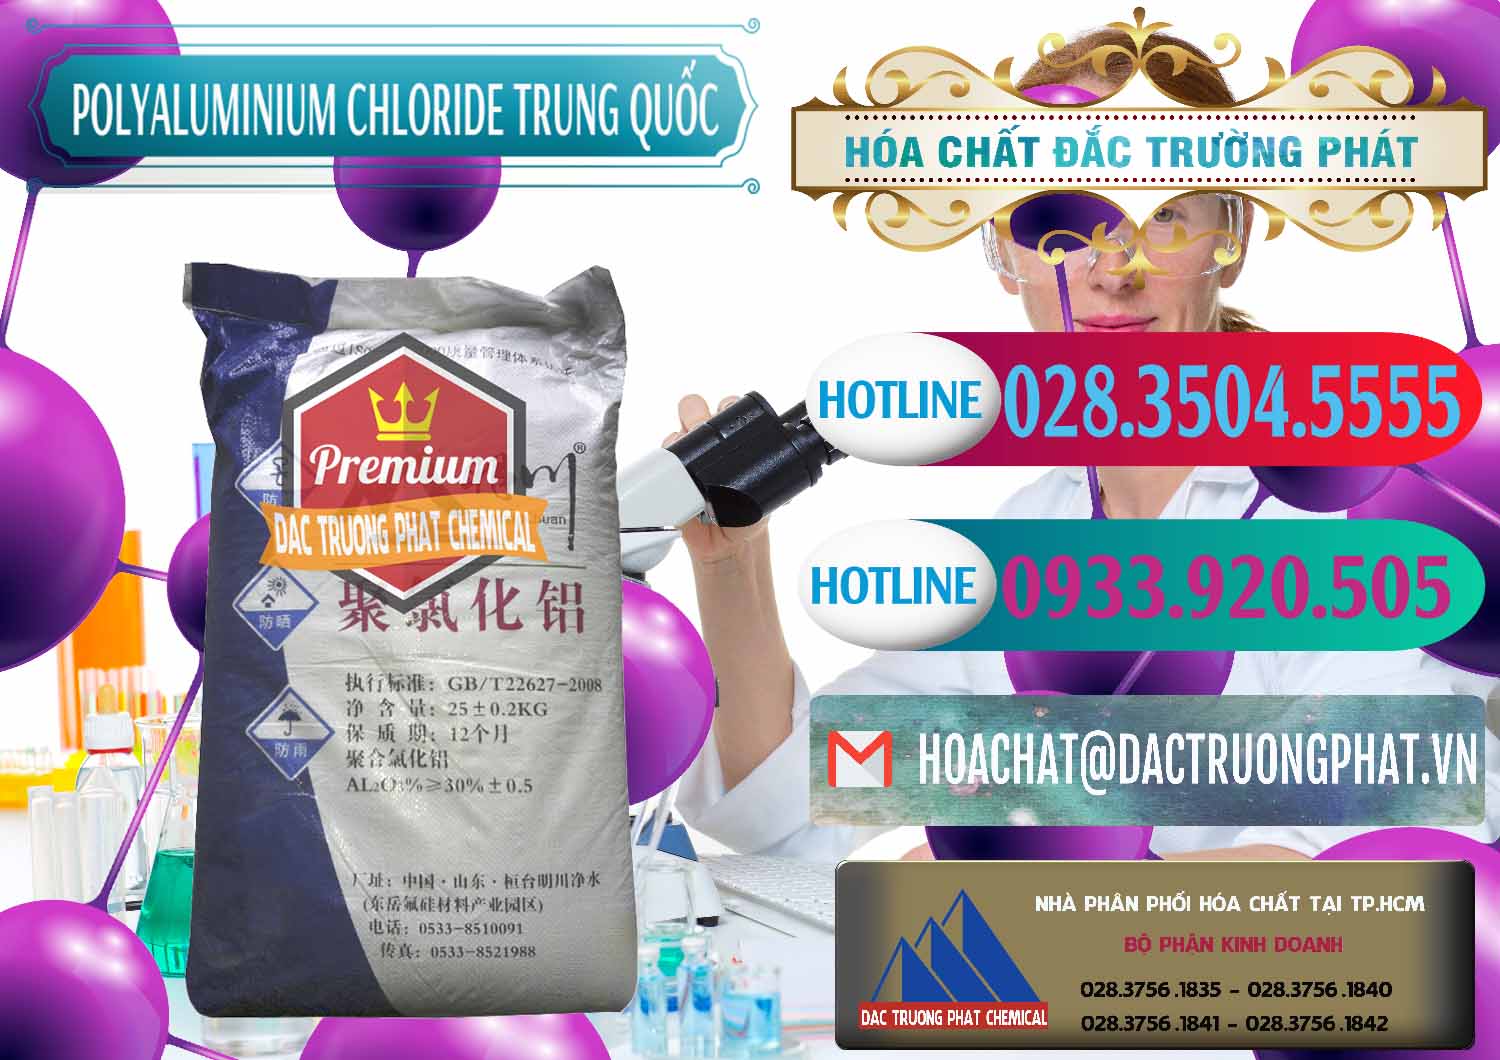 Cty chuyên cung cấp & bán PAC - Polyaluminium Chloride Mingchuan Trung Quốc China - 0445 - Nơi chuyên cung cấp & nhập khẩu hóa chất tại TP.HCM - truongphat.vn